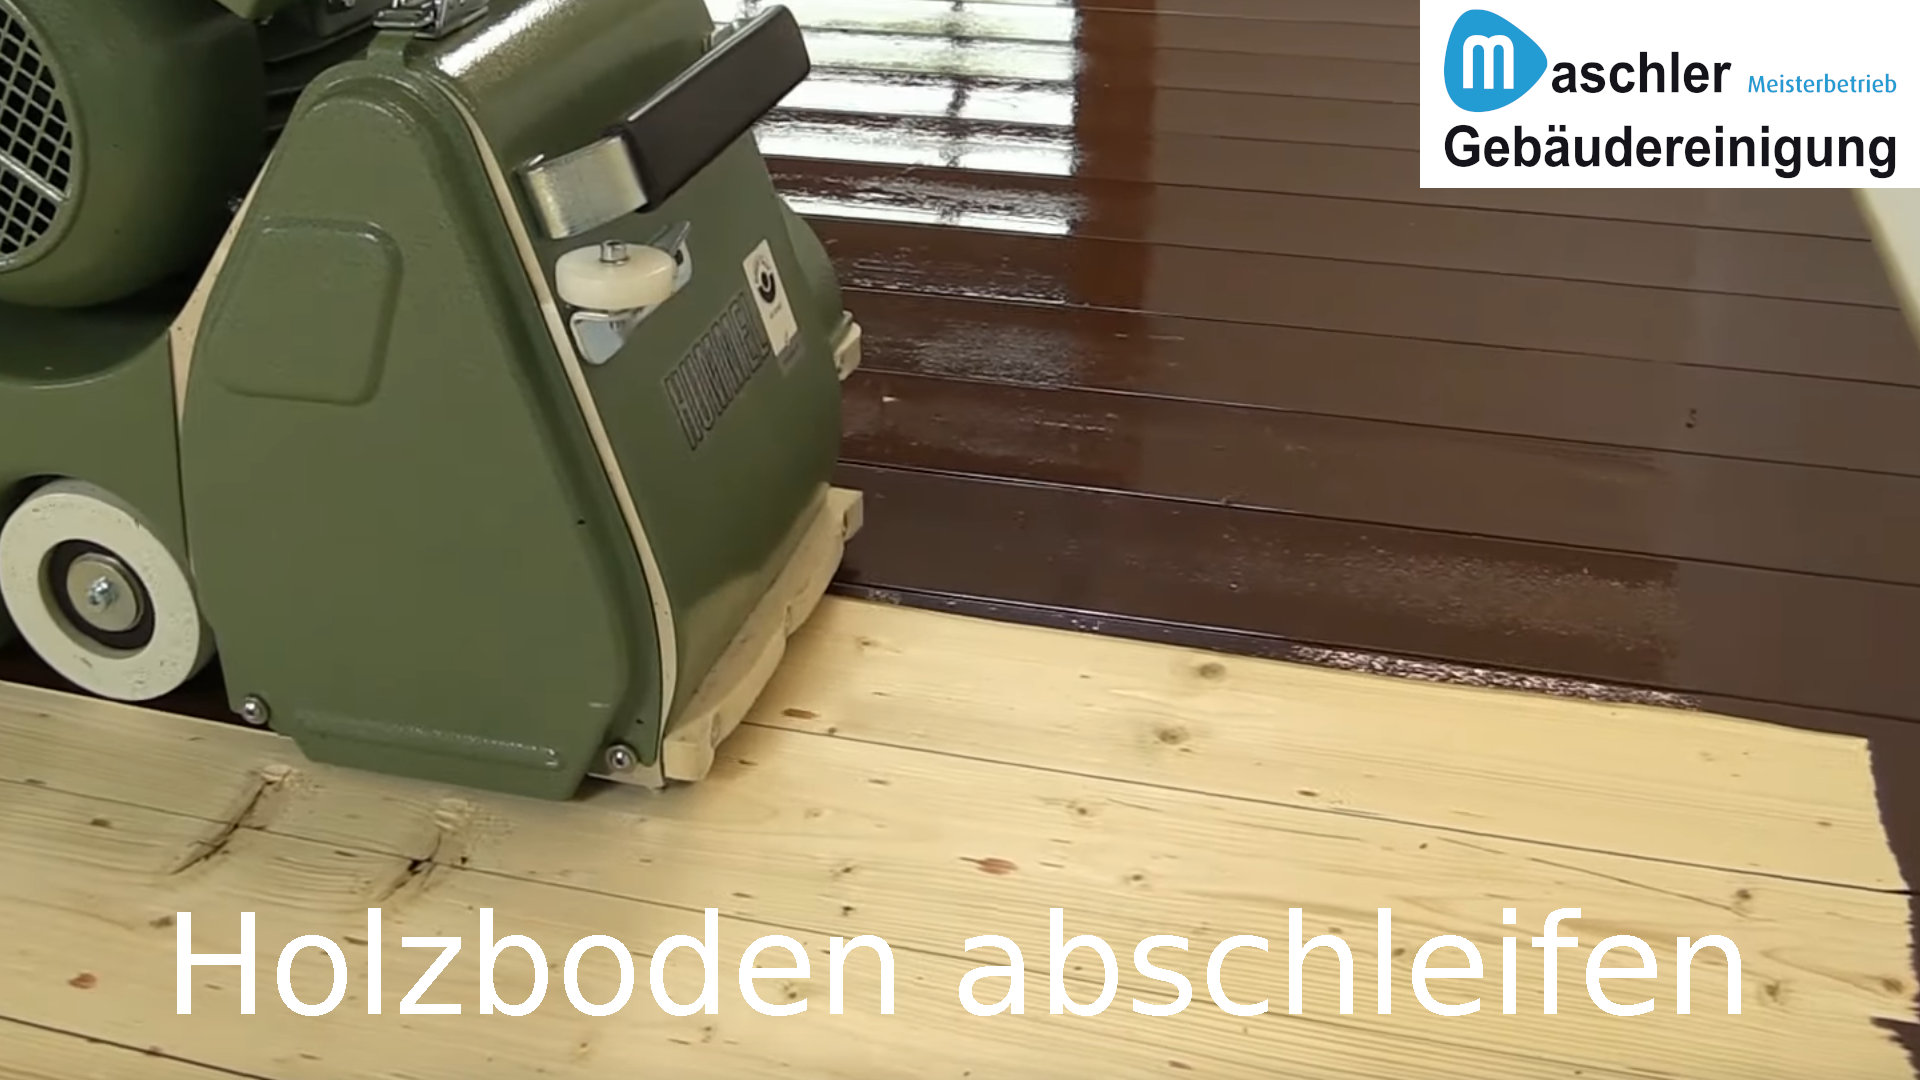 Holzboden abschleifen - Gebäudereinigung Maschler Schwerin